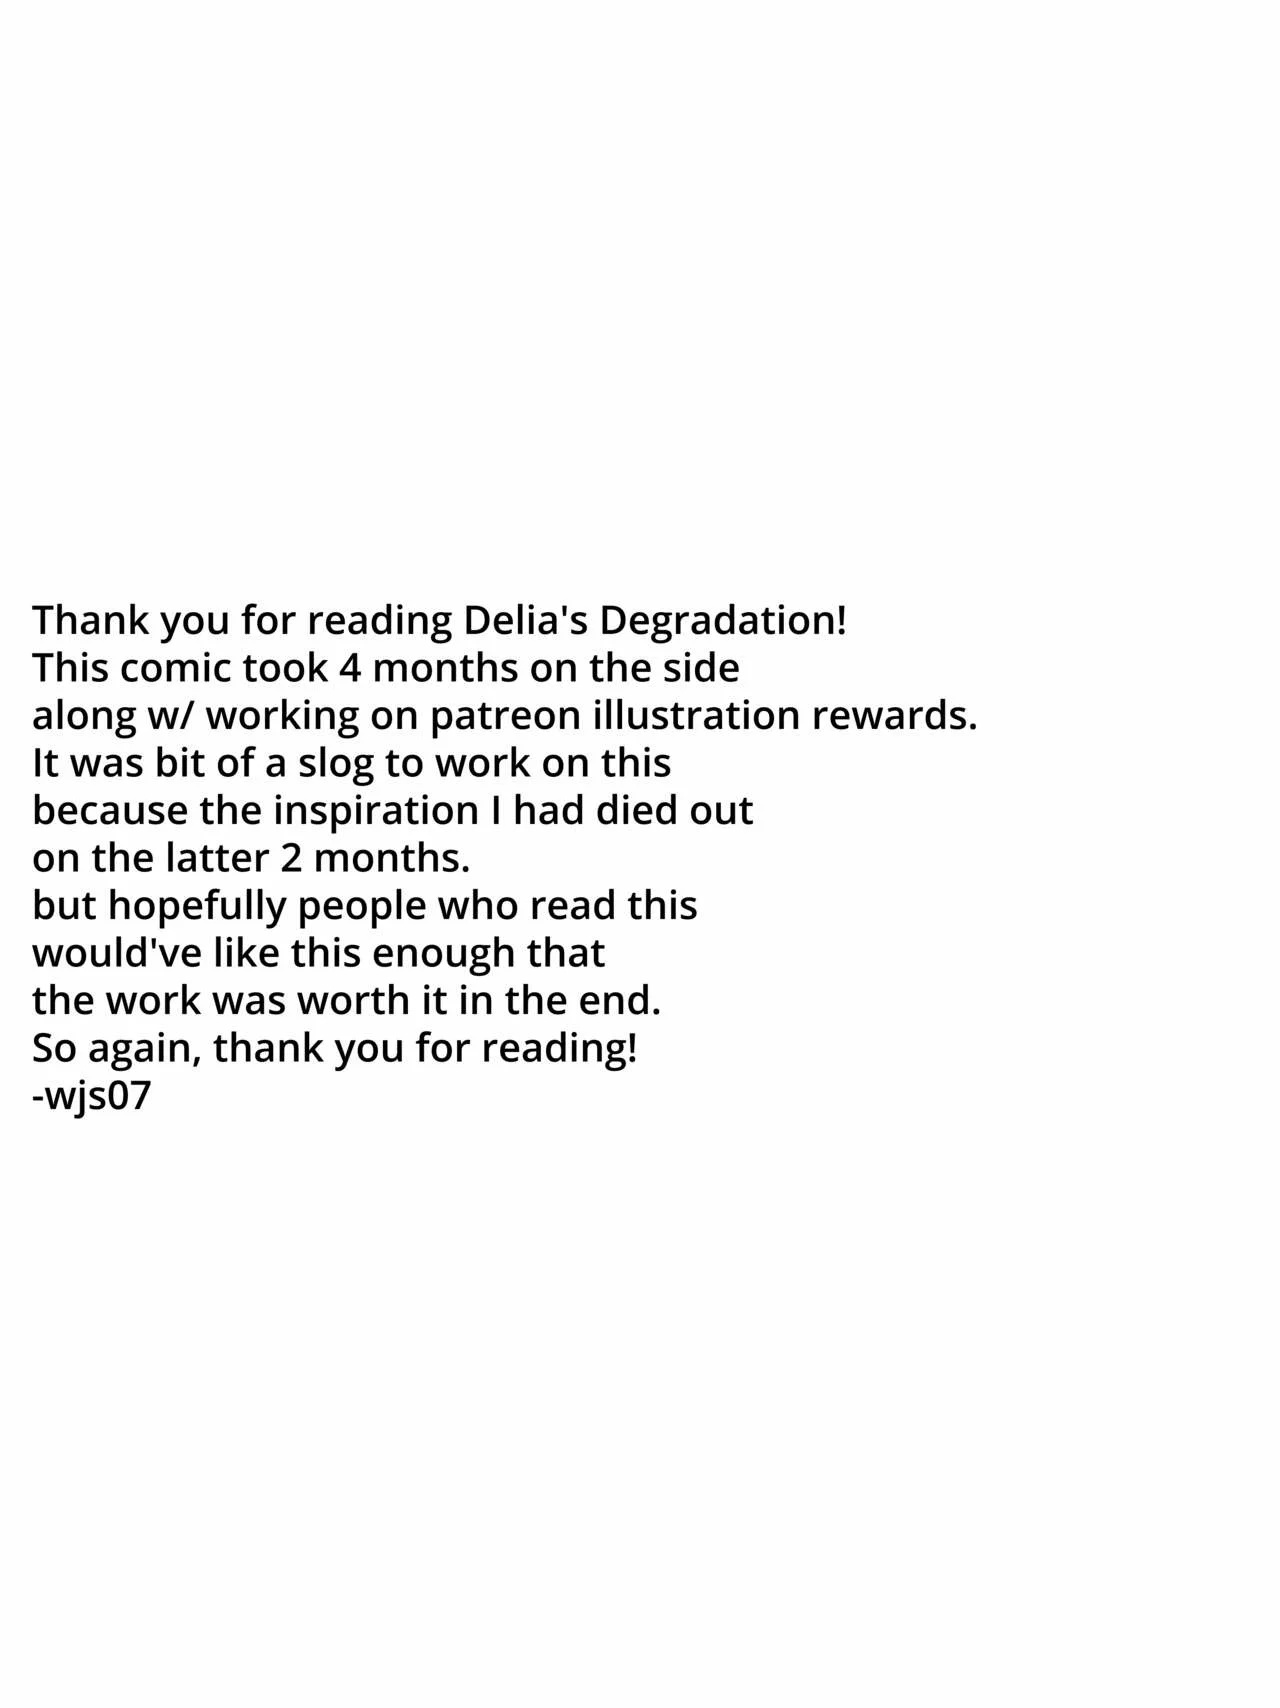 Delia Degradation (Pokemon) - 34